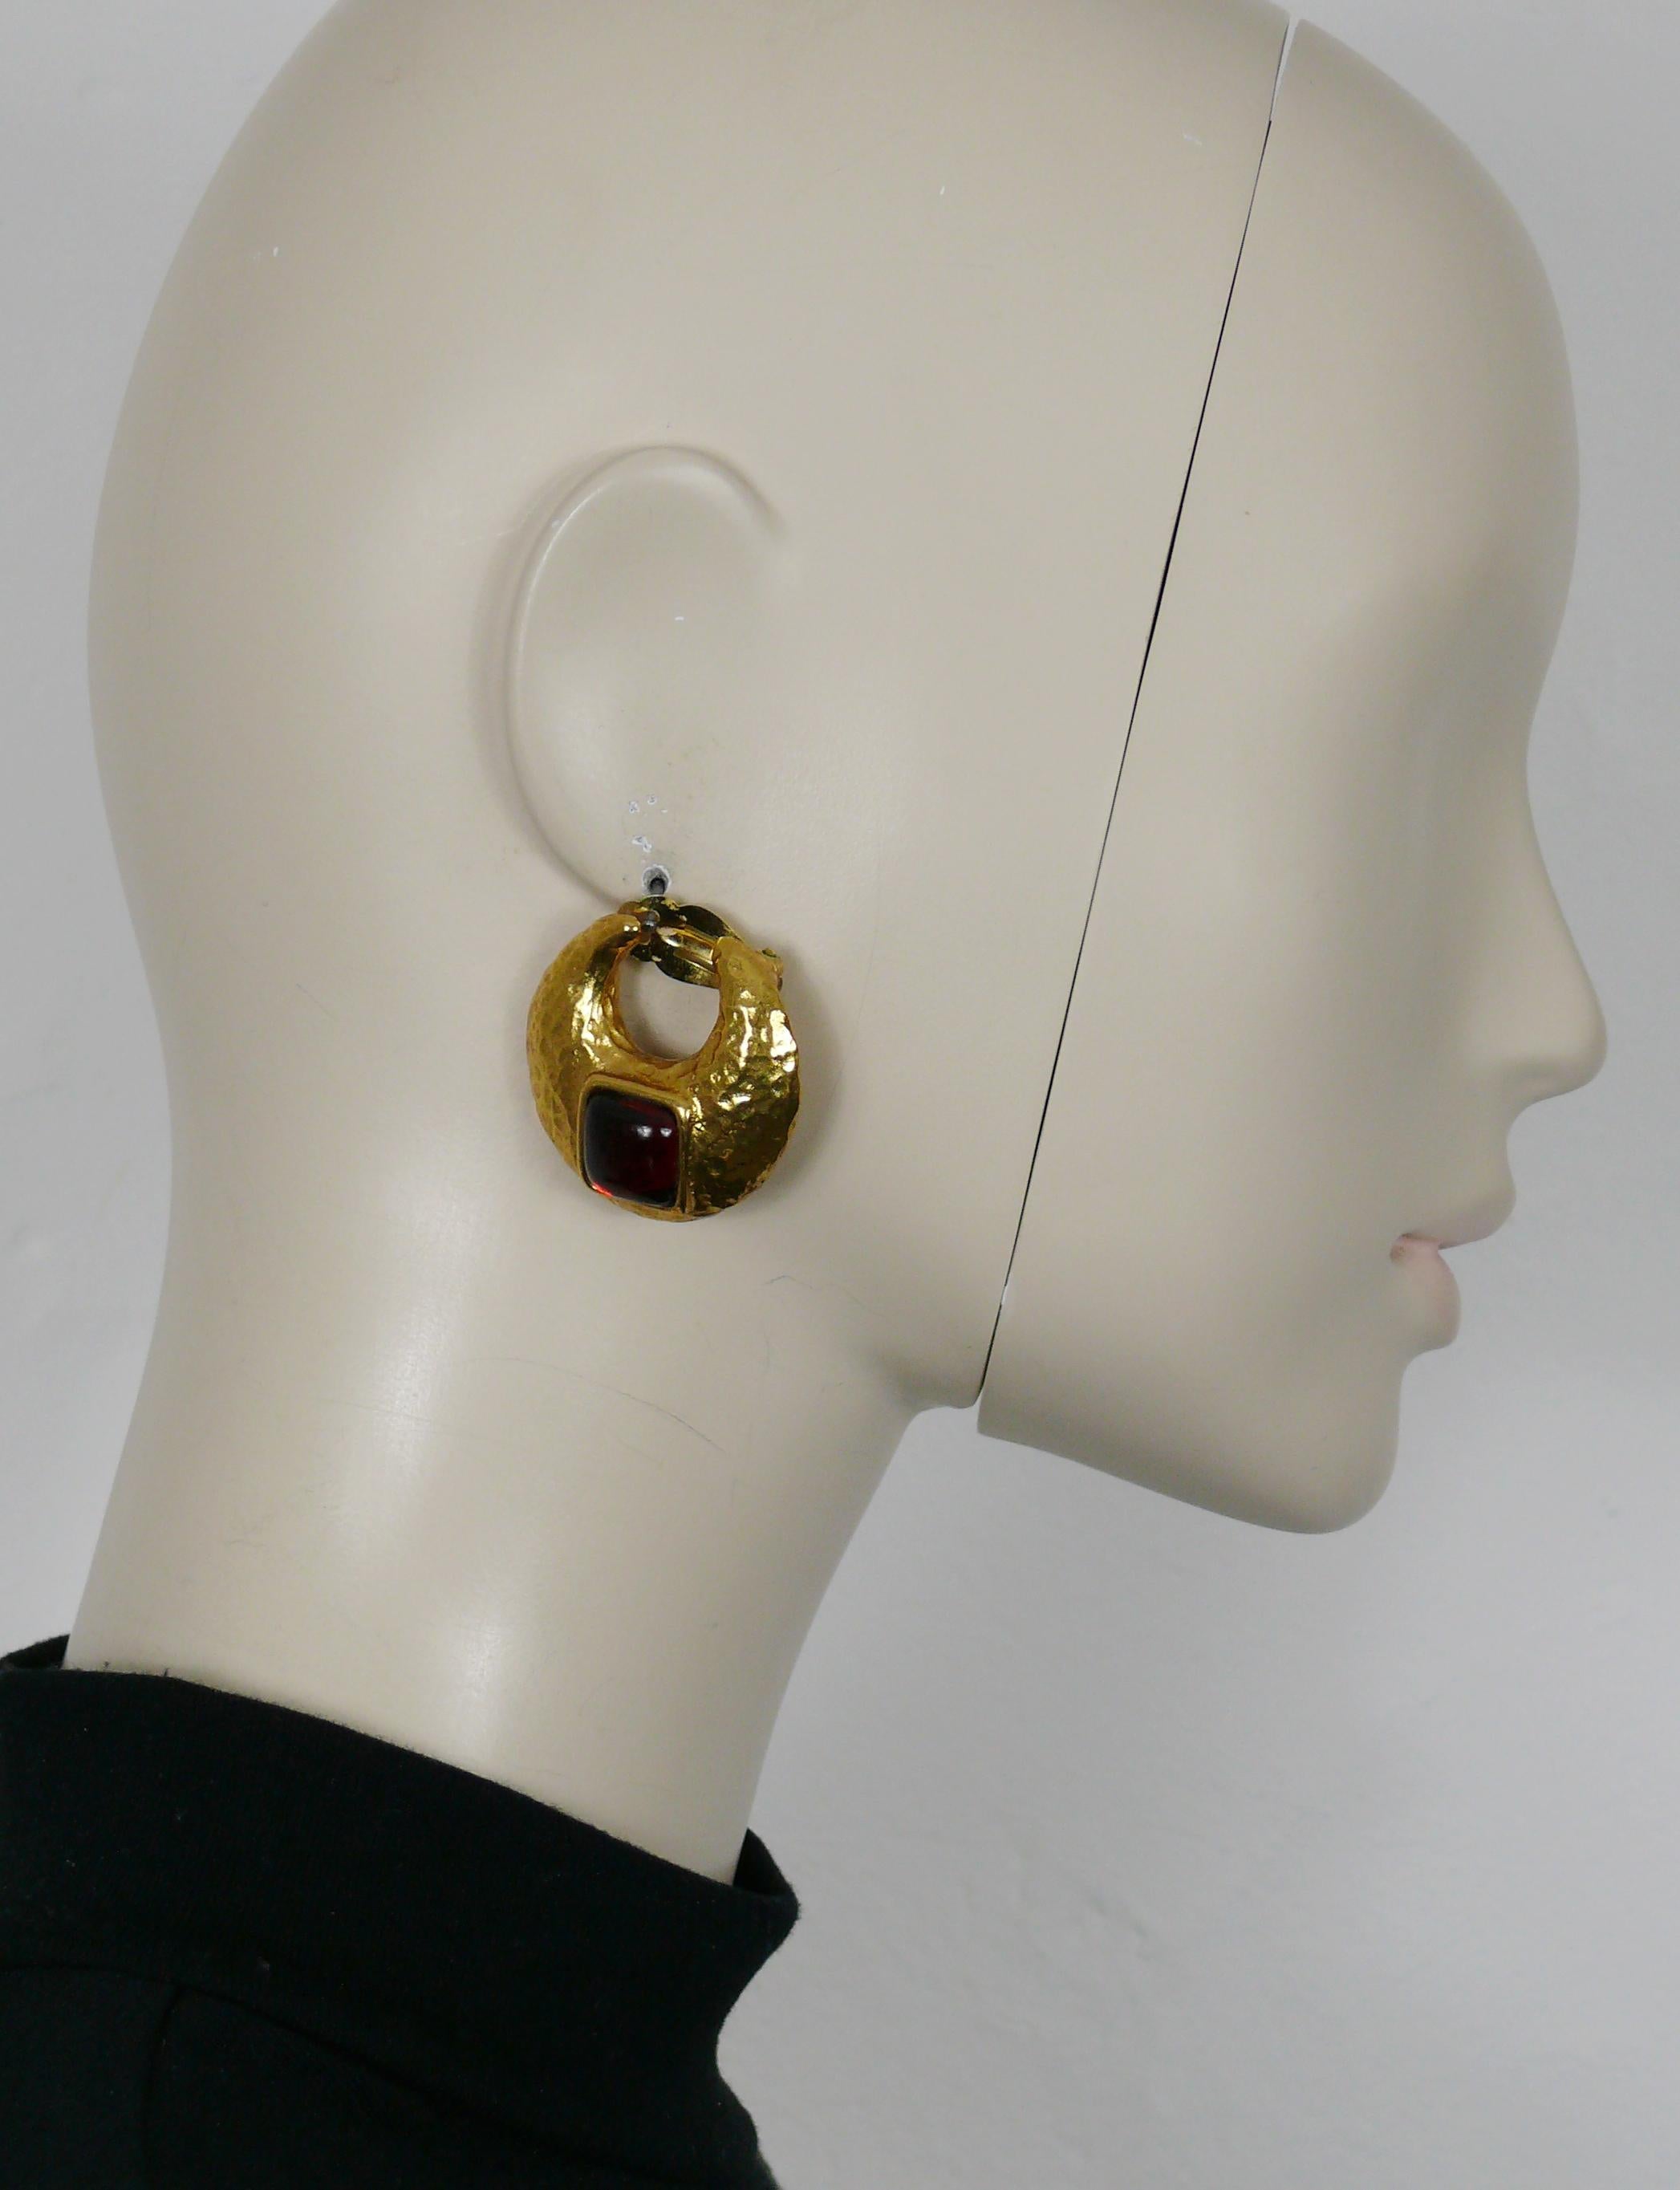 YVES SAINT LAURENT Vintage-Ohrringe in Form eines halbmondförmigen, strukturierten Goldtons, verziert mit einem roten Harz-Cabochon.

Geprägtes YSL Made in France.

Ungefähre Maße: Höhe ca. 3,5 cm (1,38 Zoll) / max. Breite ca. 3,5 cm (1,38